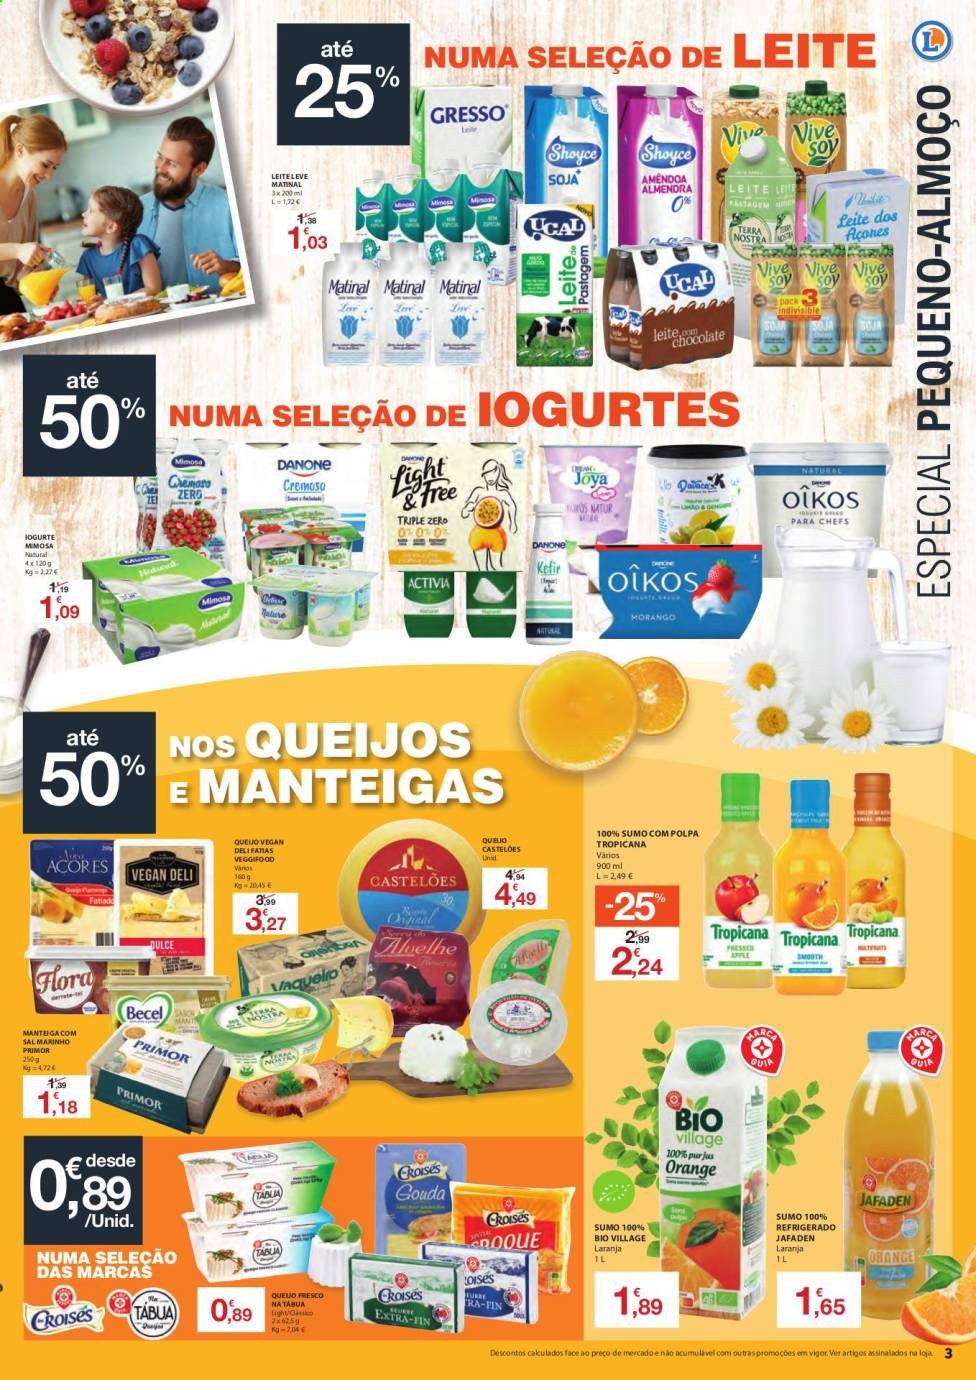 thumbnail - Folheto E.Leclerc - 20.4.2021 - 2.5.2021 - Produtos em promoção - laranja, gouda, iogurte, Danone, Mimosa, manteiga, Becel, sal, amêndoa. Página 3.